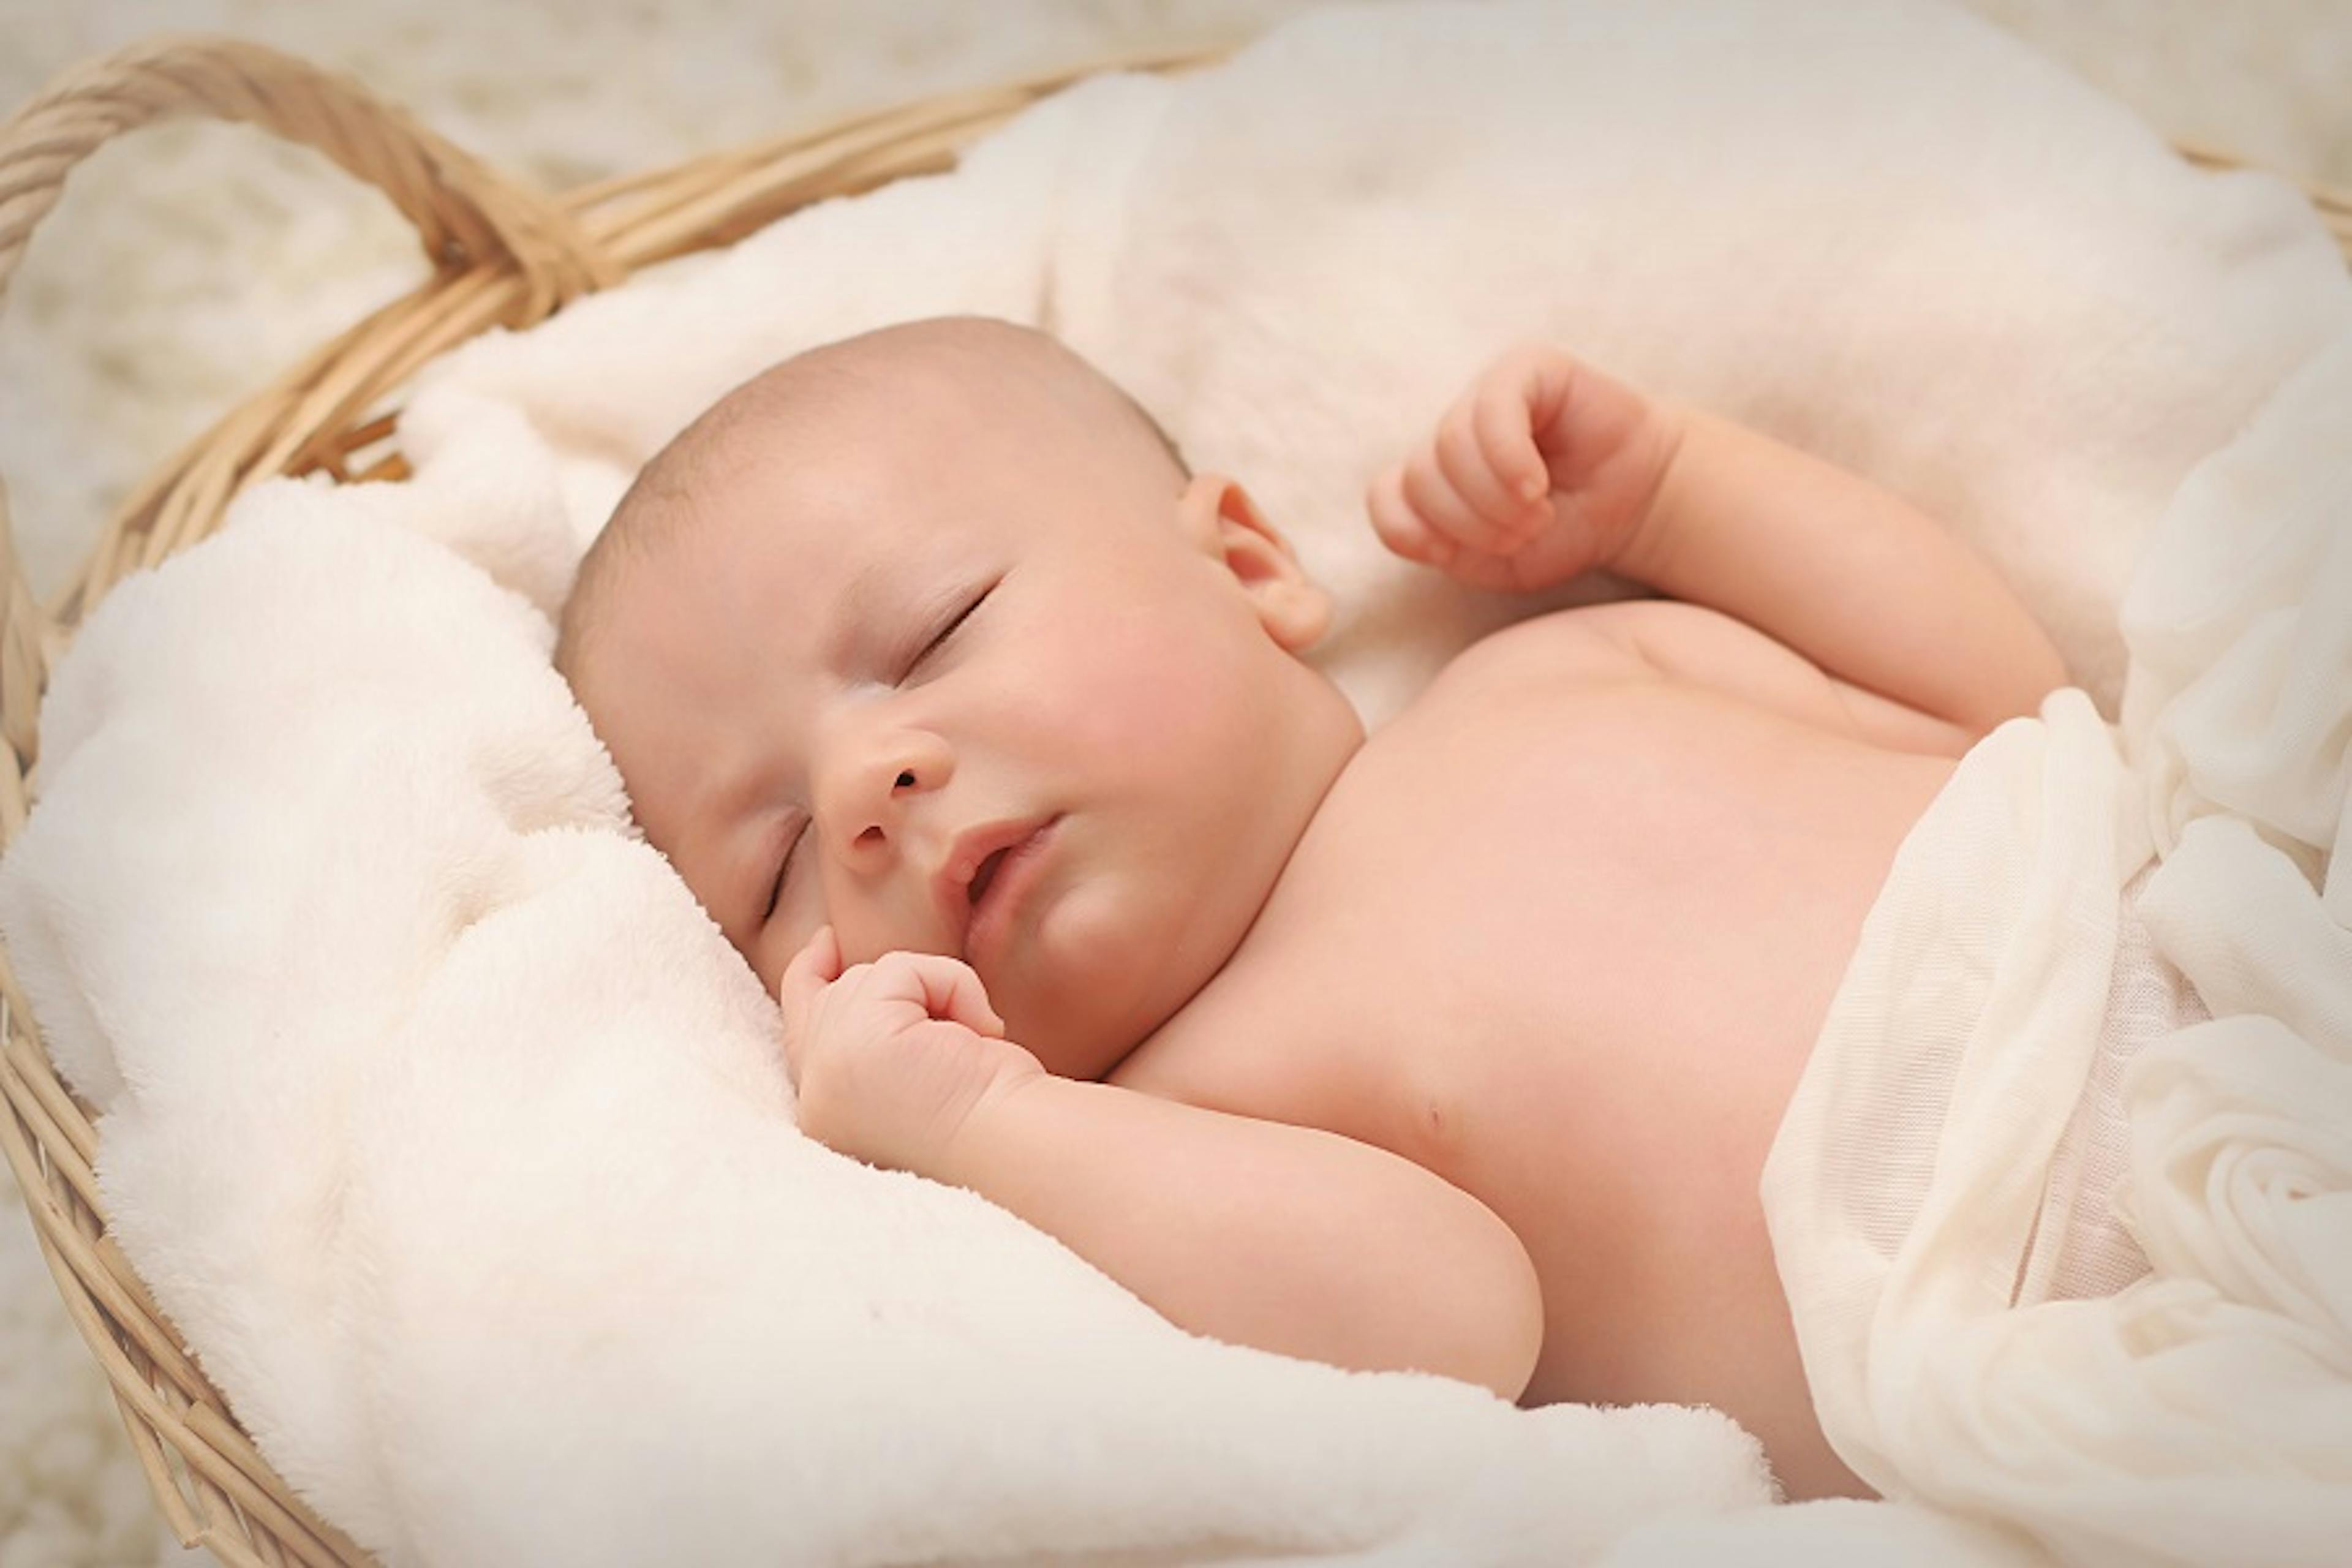 Colental, kojenecké koliky unovorozenců a kojenců, bolestíi bříška, nadýmáním a neklid, miminko v kolebce